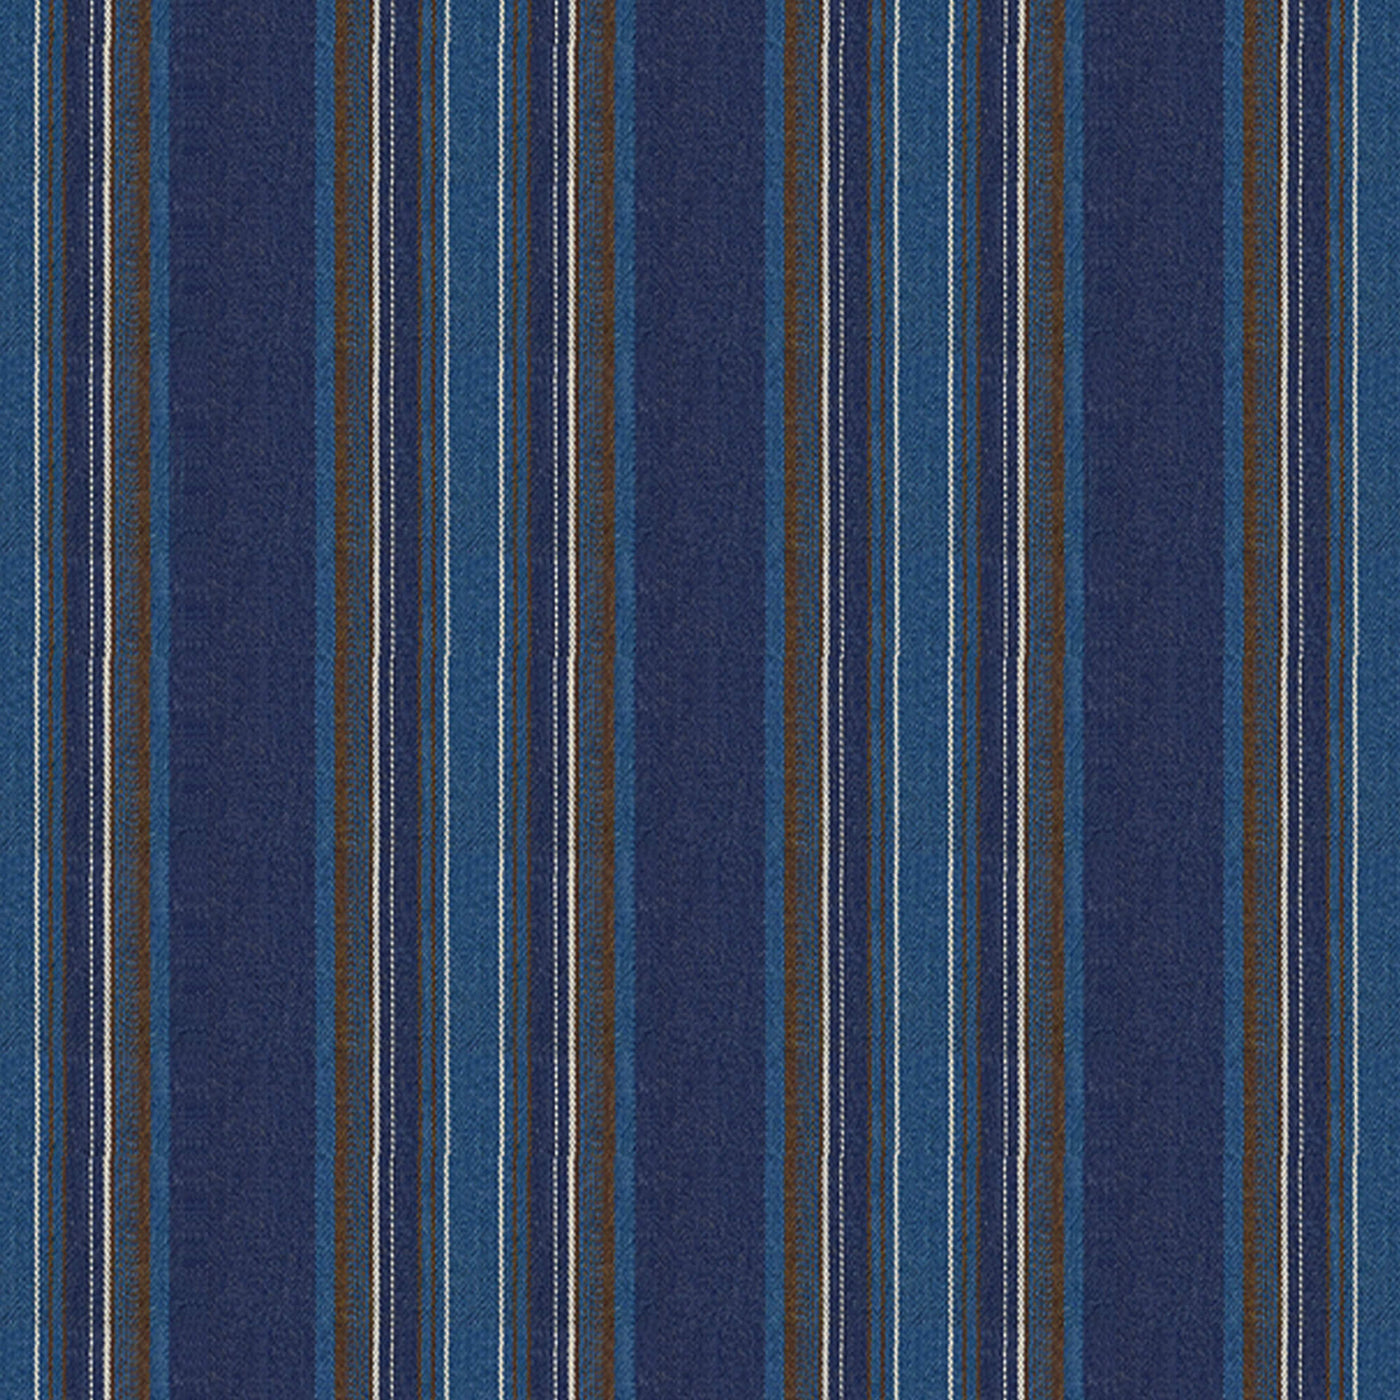 PENGI Outdoor Curtains Waterproof - Stripe Blue